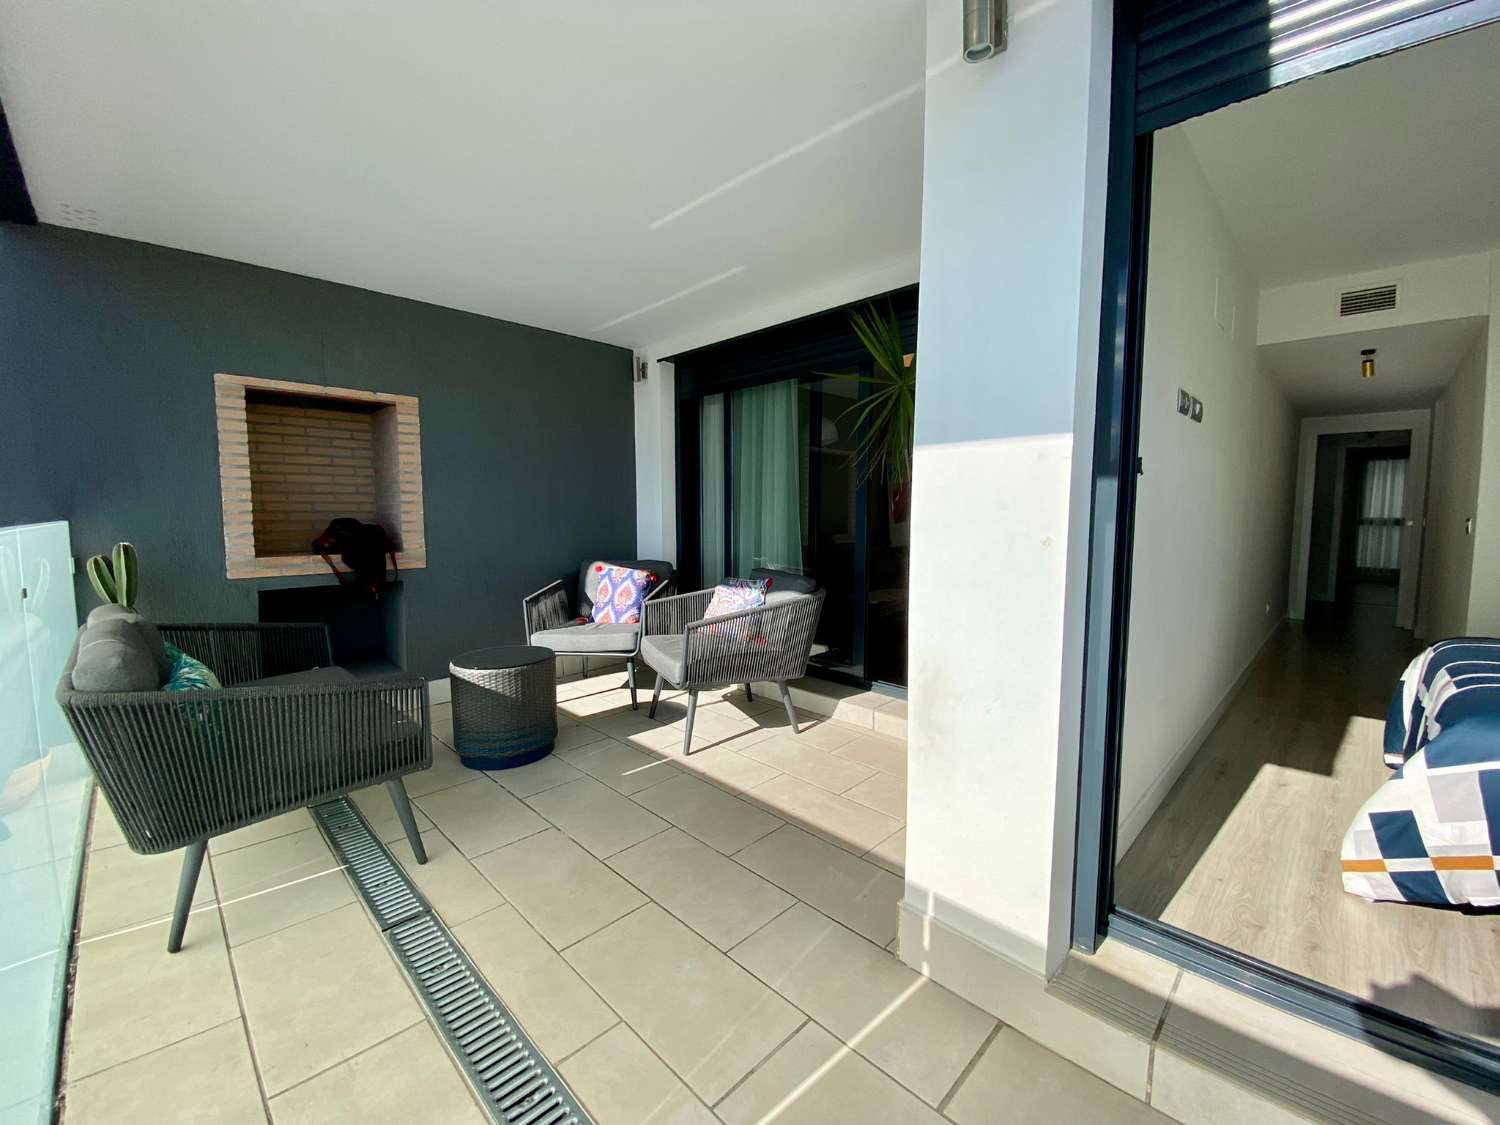 Apartamento dos dormitorios, con terraza, y piscina comunitaria junto a la playa del puerto de la Caleta, disponible para invierno